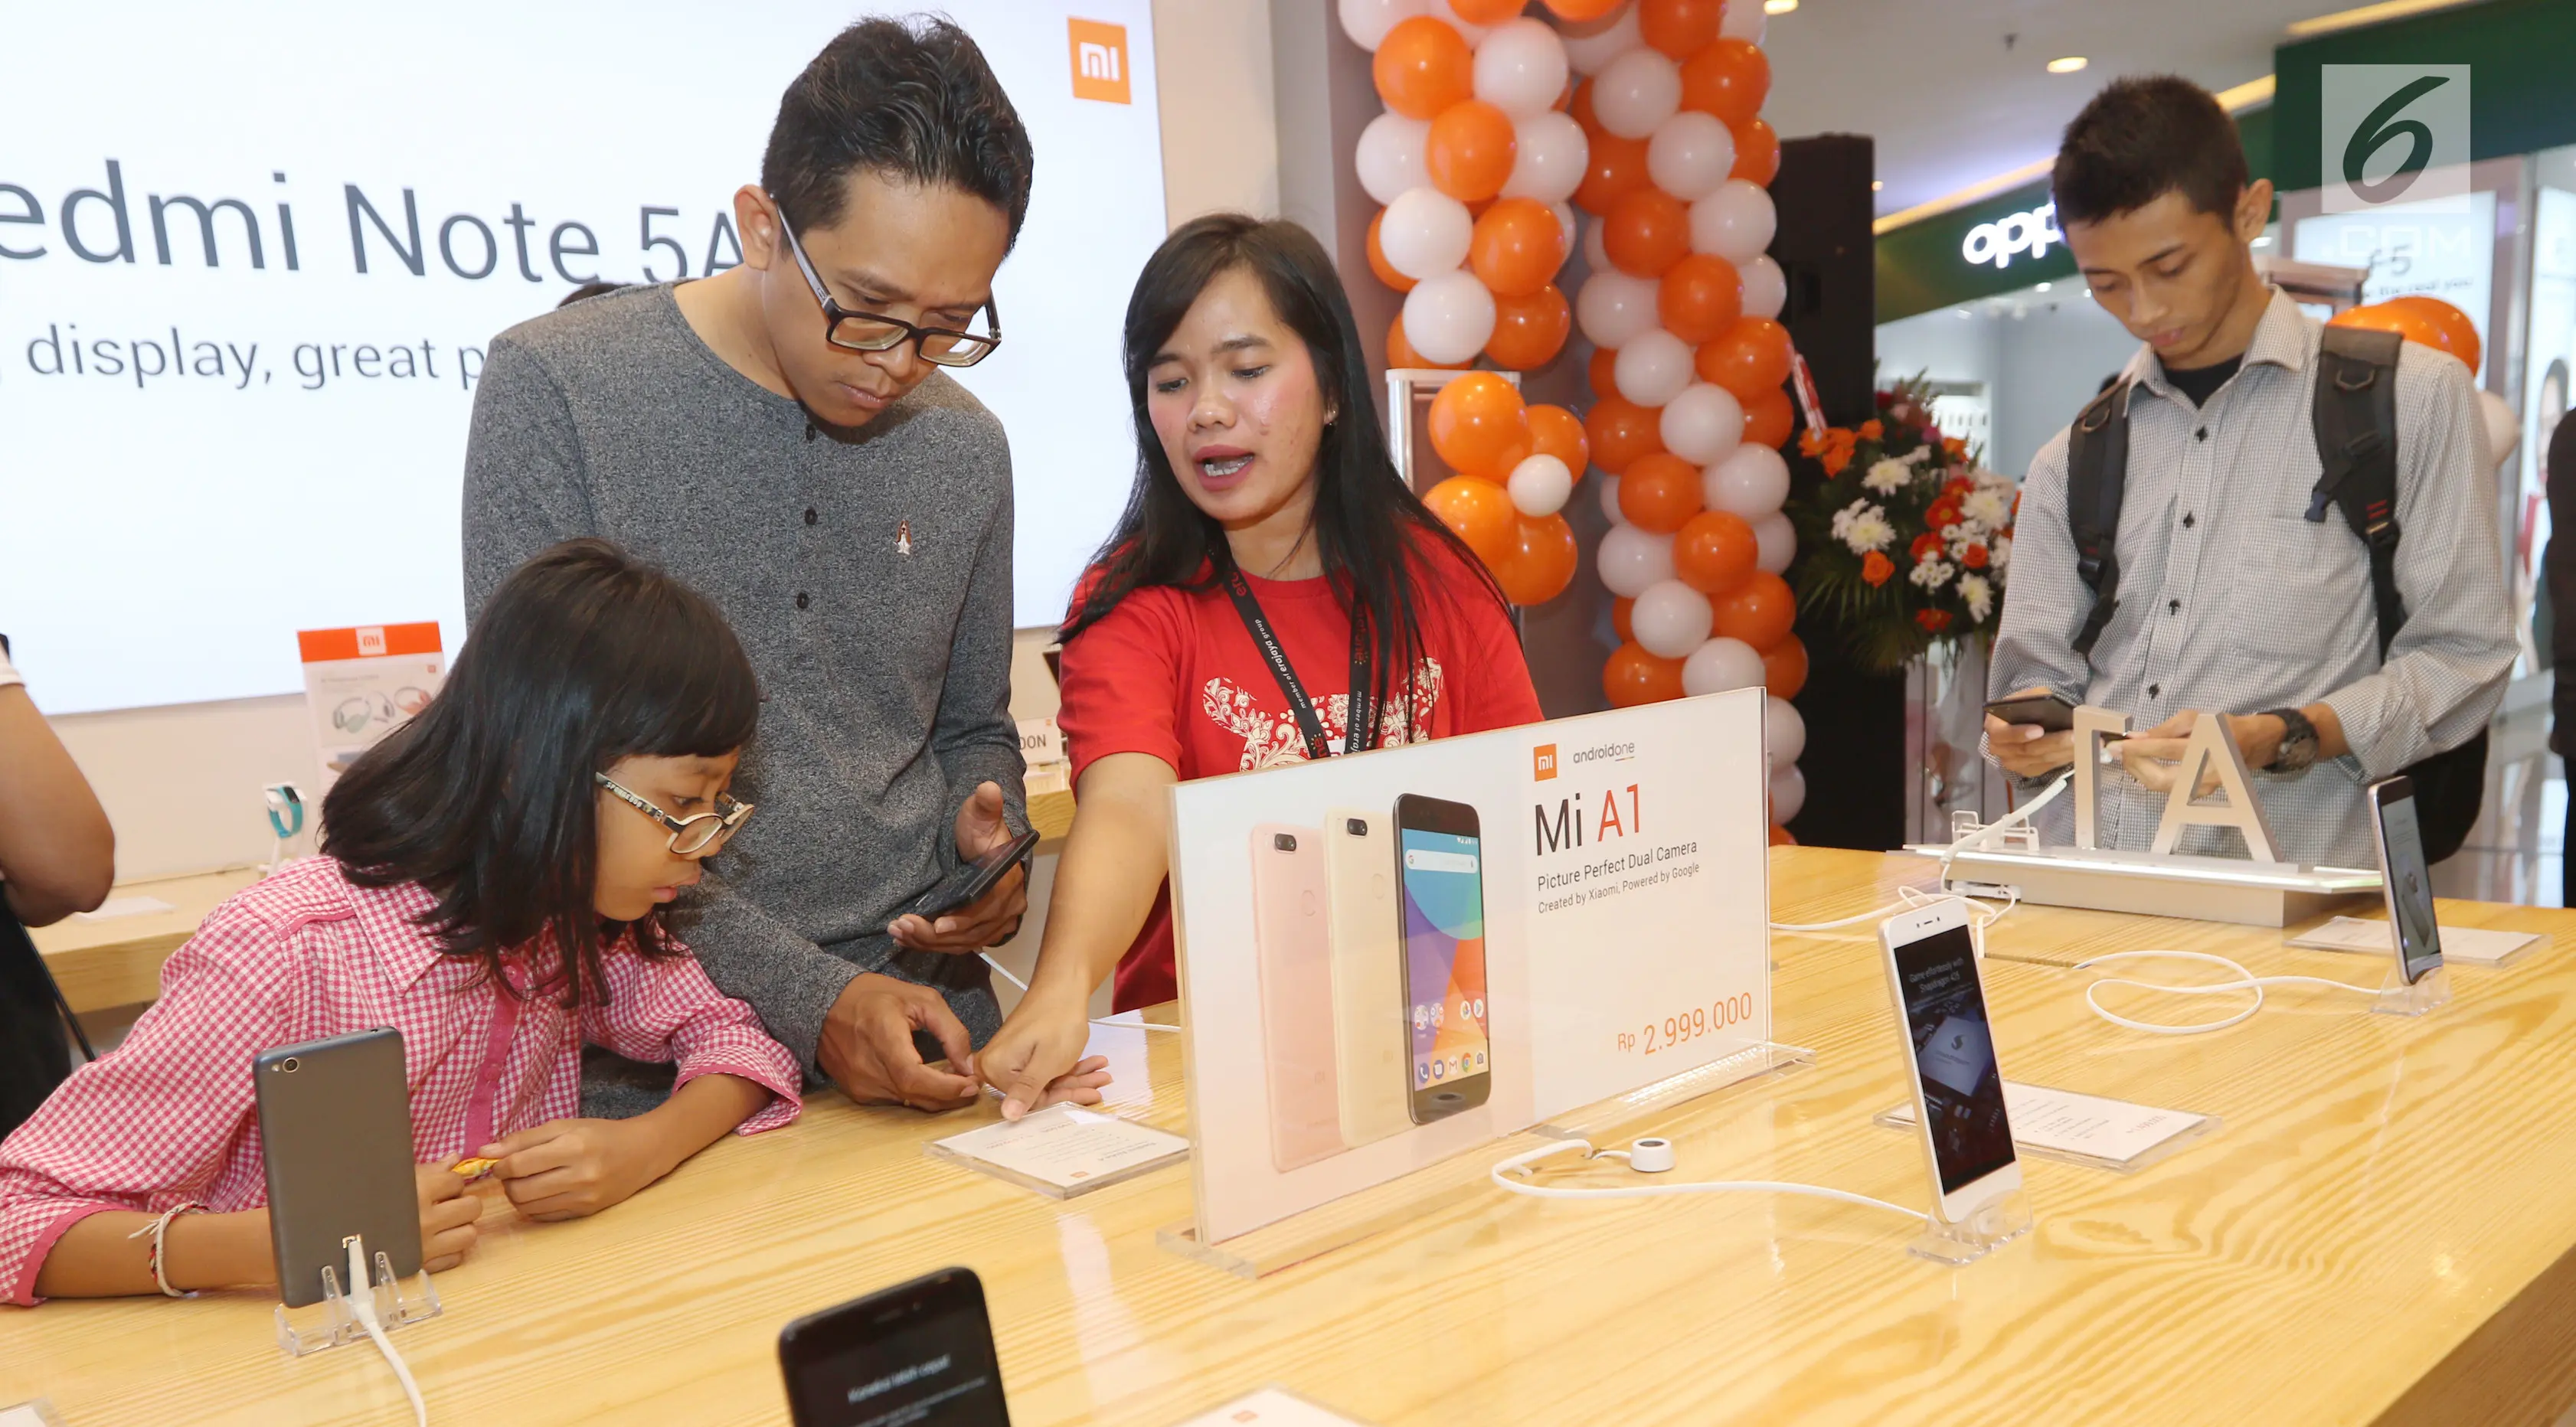 Sejumlah calon pembeli melihat asesoris dan handphone Xiaomi di Emporium Pluit Mall, Jakarta. Minggu (21/1). Mereka mulai antre sejak pagi sebelum jam operasional mal. (Liputan6.com/Fery Pradolo)